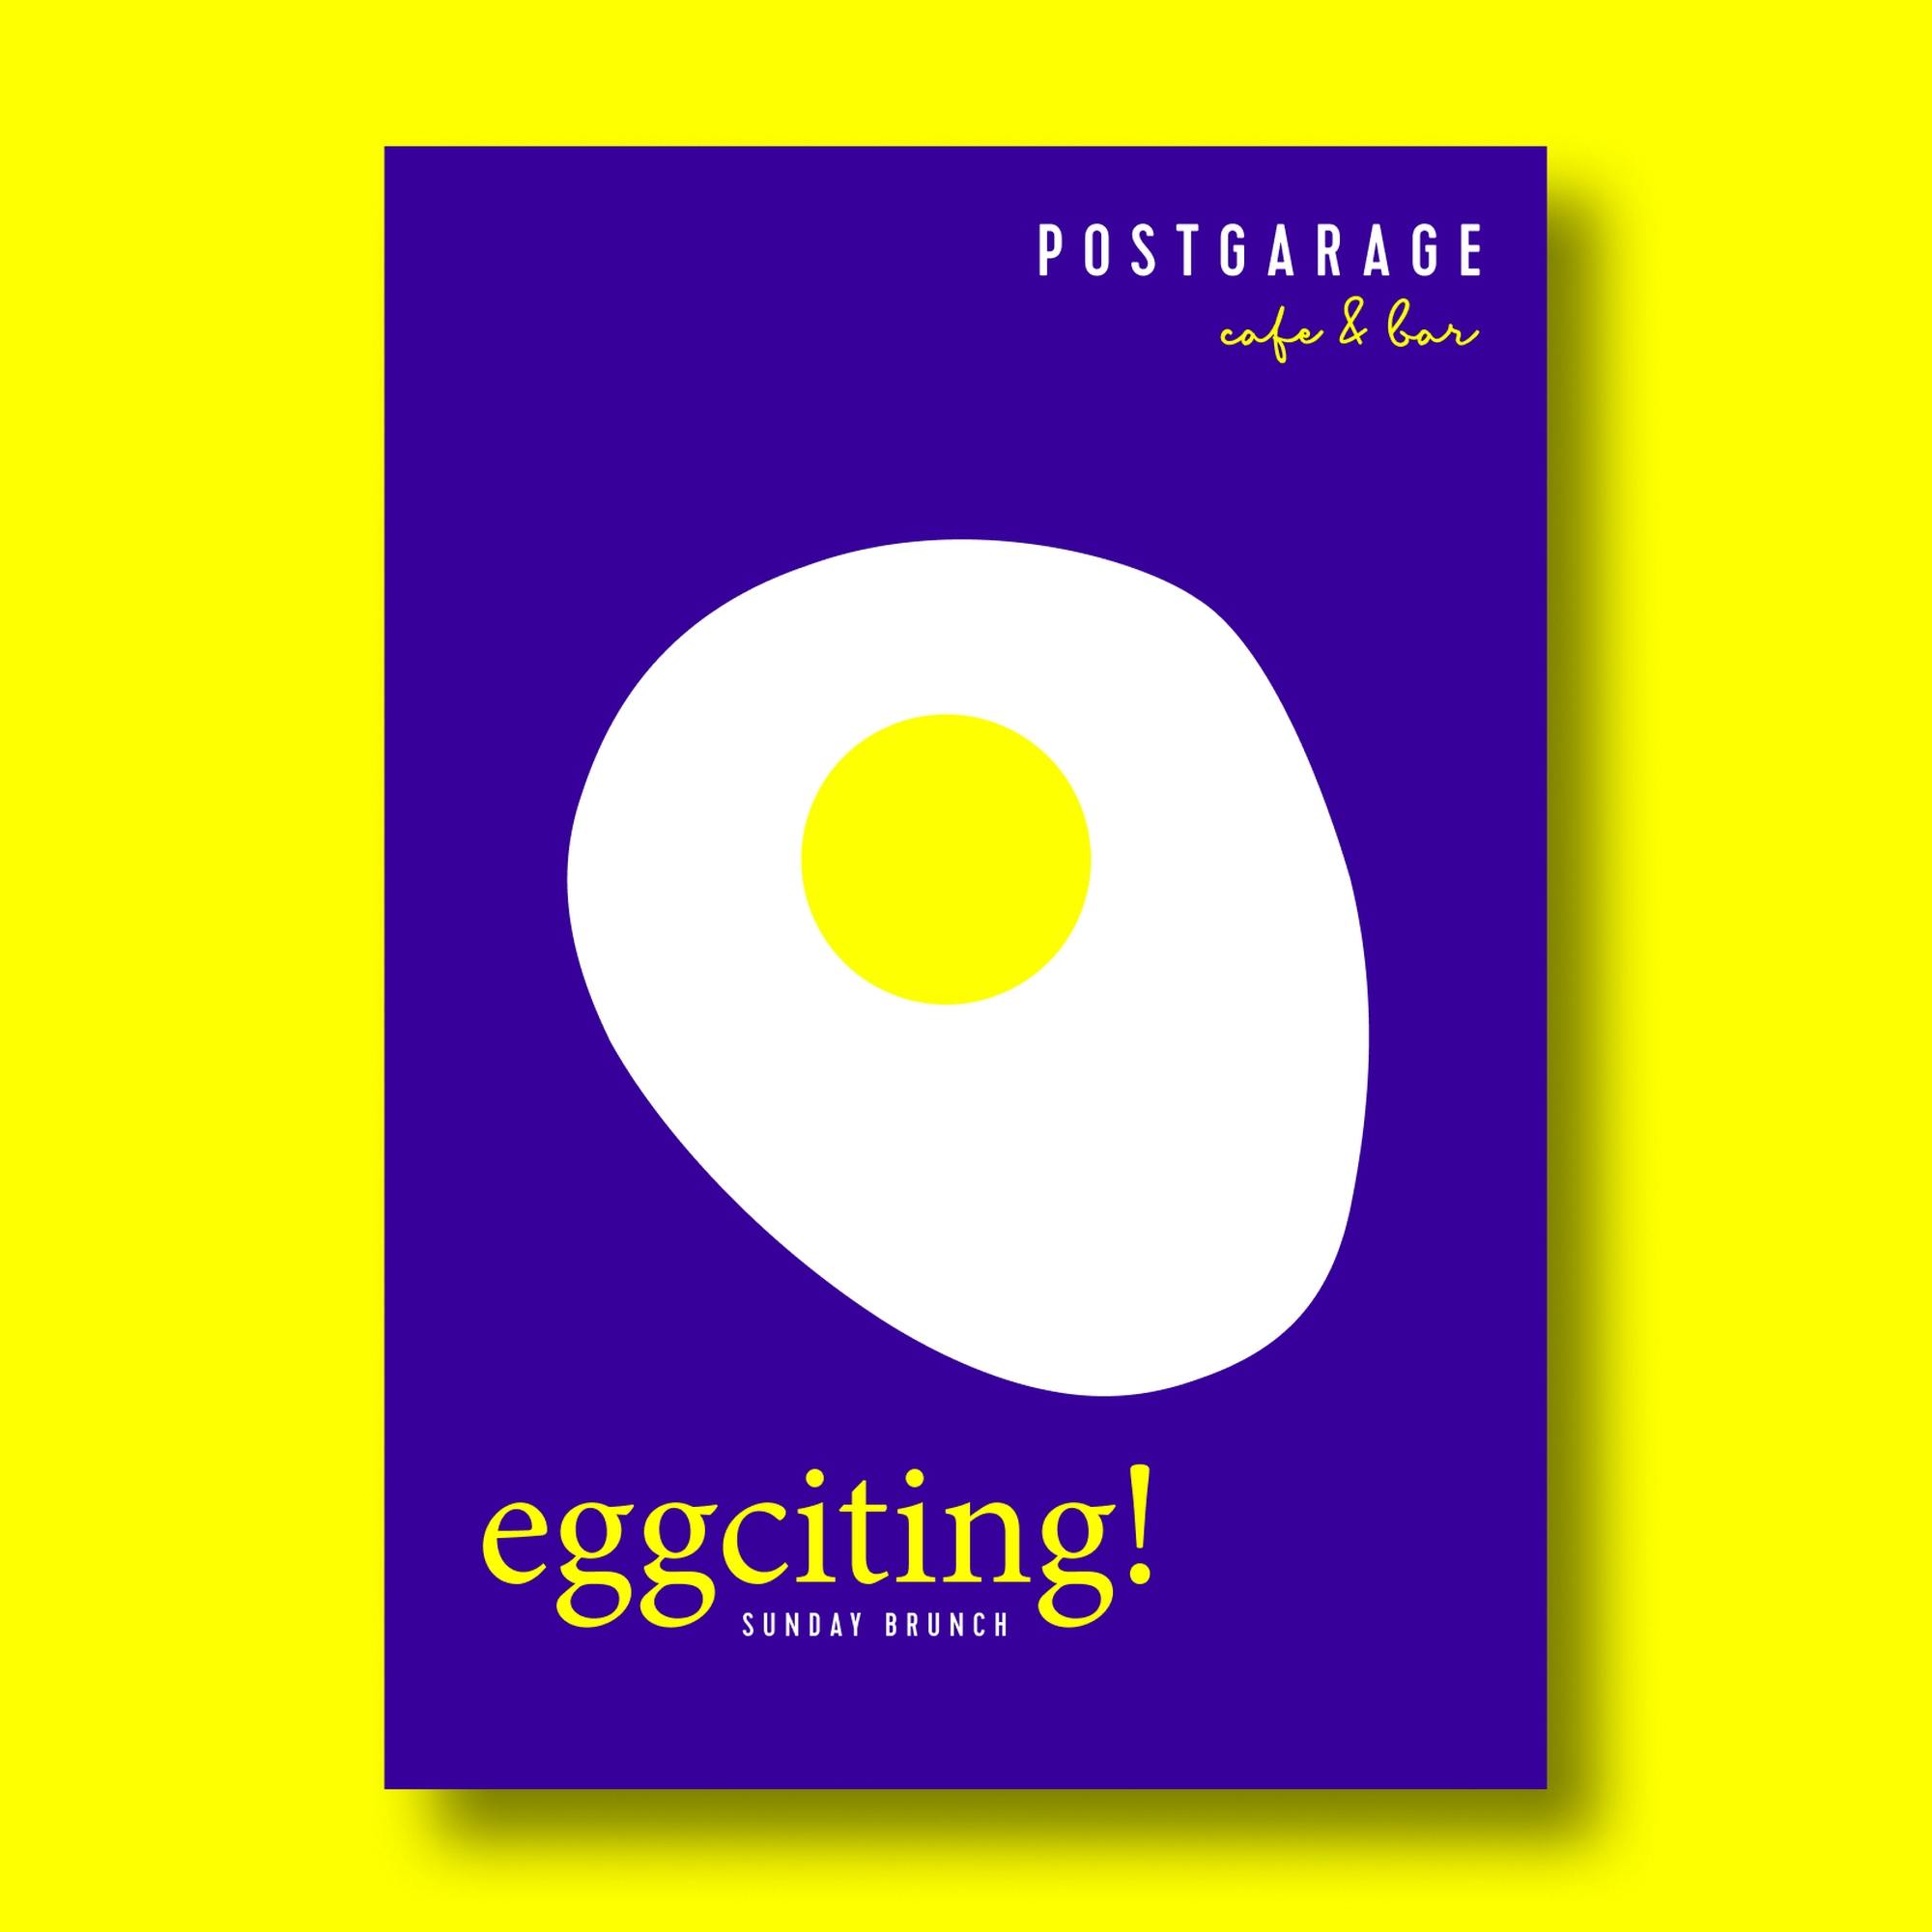 Flyer Sunday Brunch der Postgarage cafe&bar mit grafischer Darstellung von einem Ei und dem Titel eggciting © gm gobiq